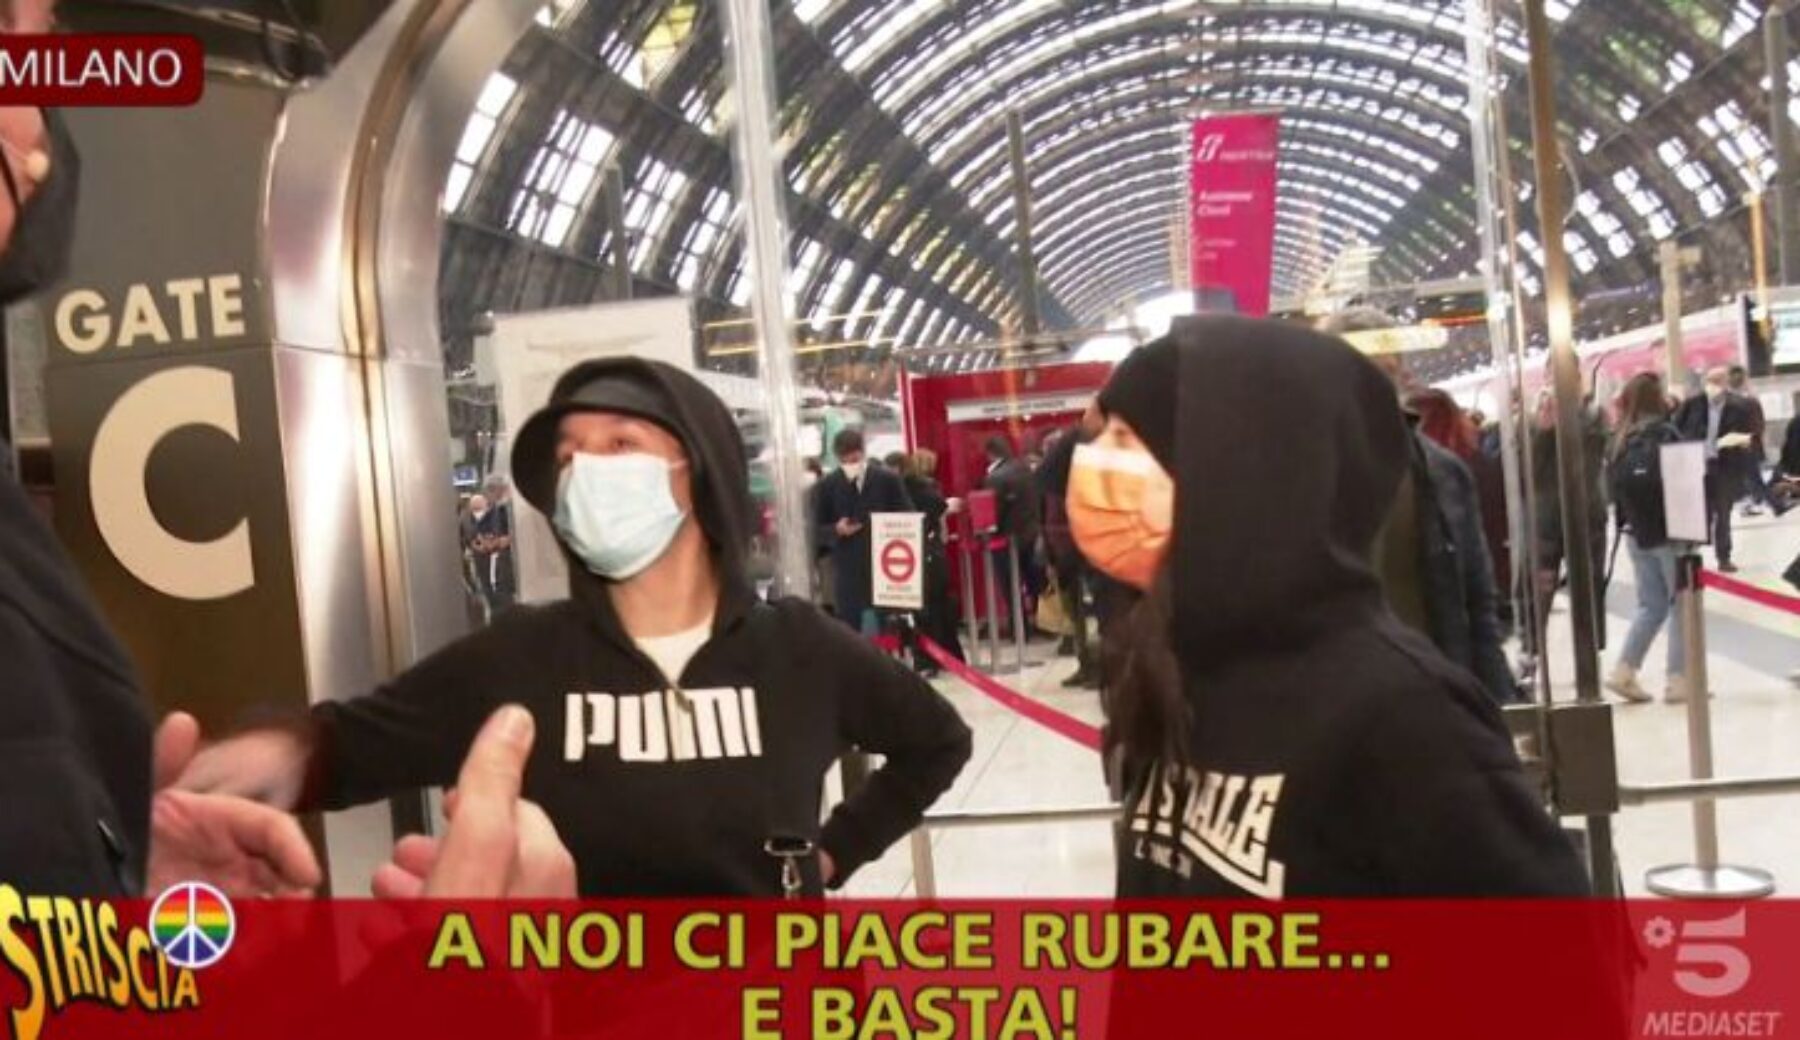 Borseggiatrici in metro a Milano: arrestate due minorenni